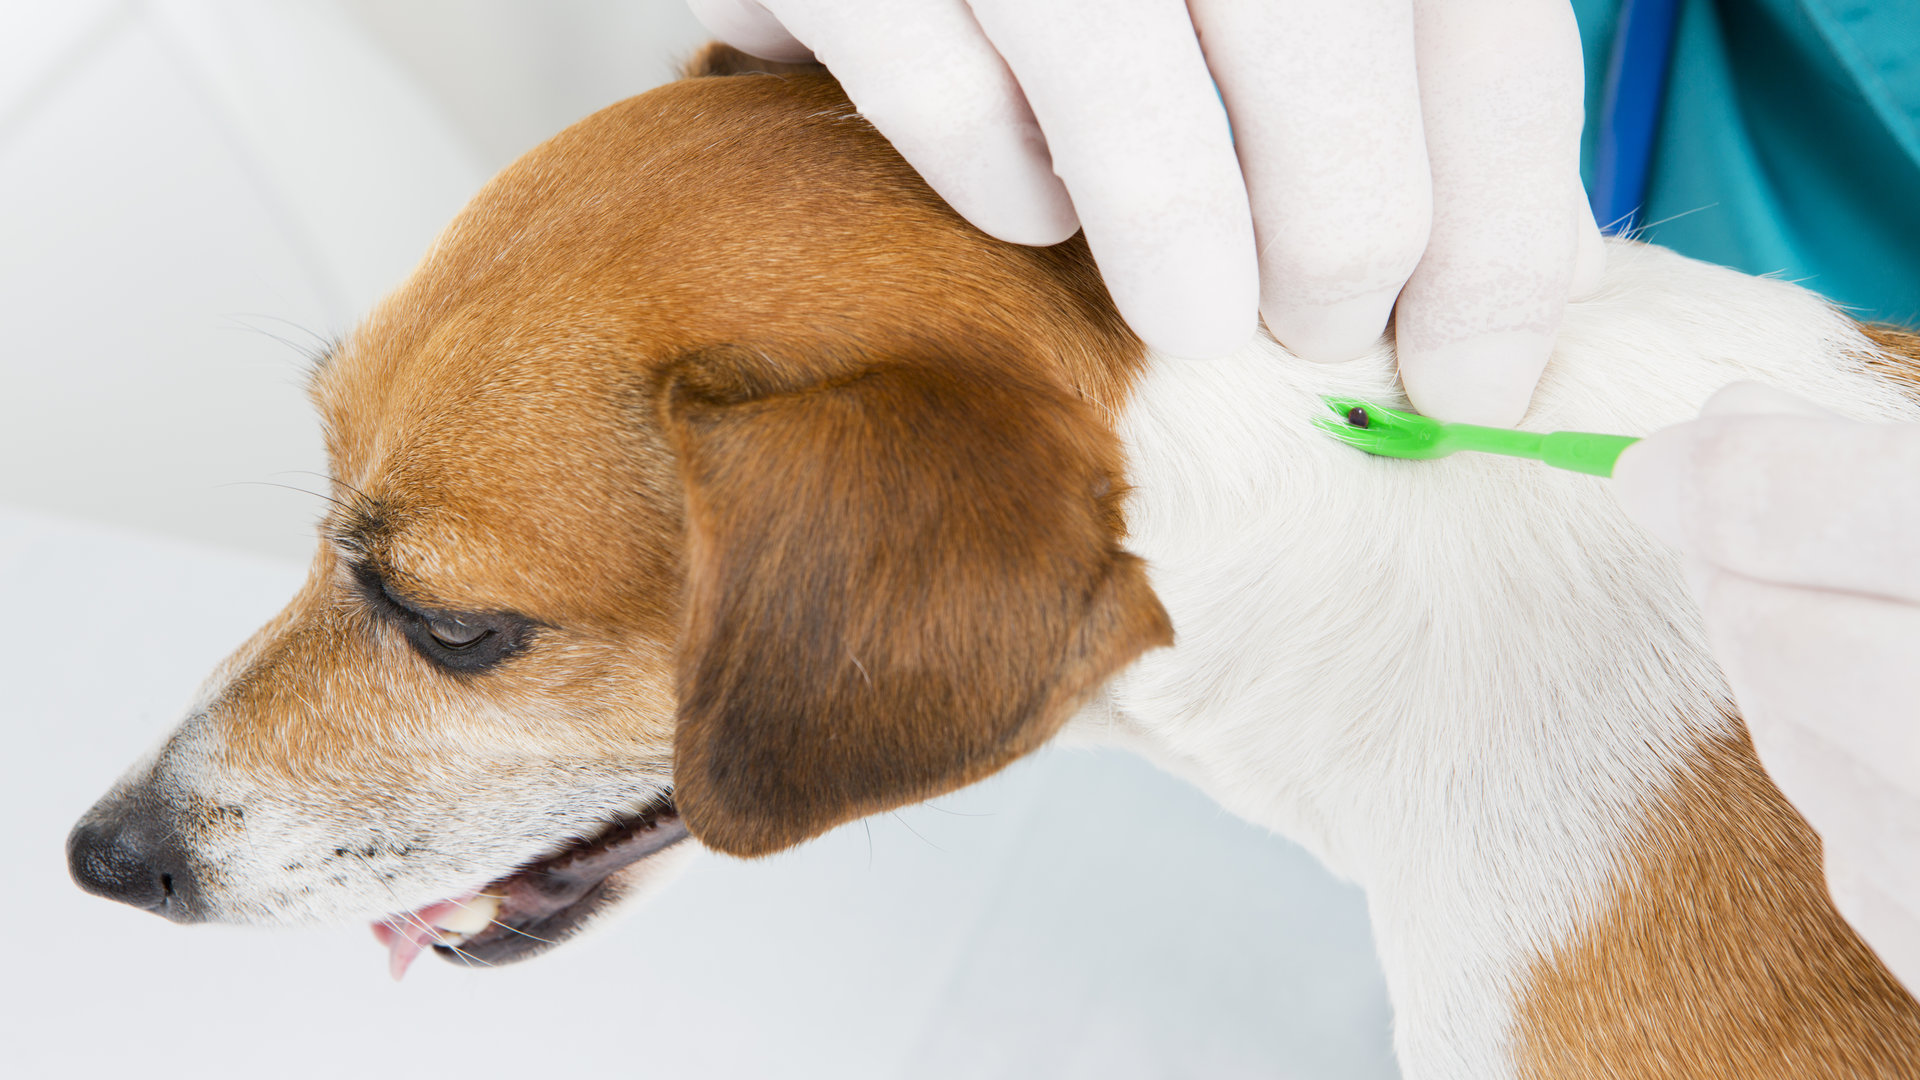 Piroplasmose chez le chien : symptômes, diagnostic et traitement